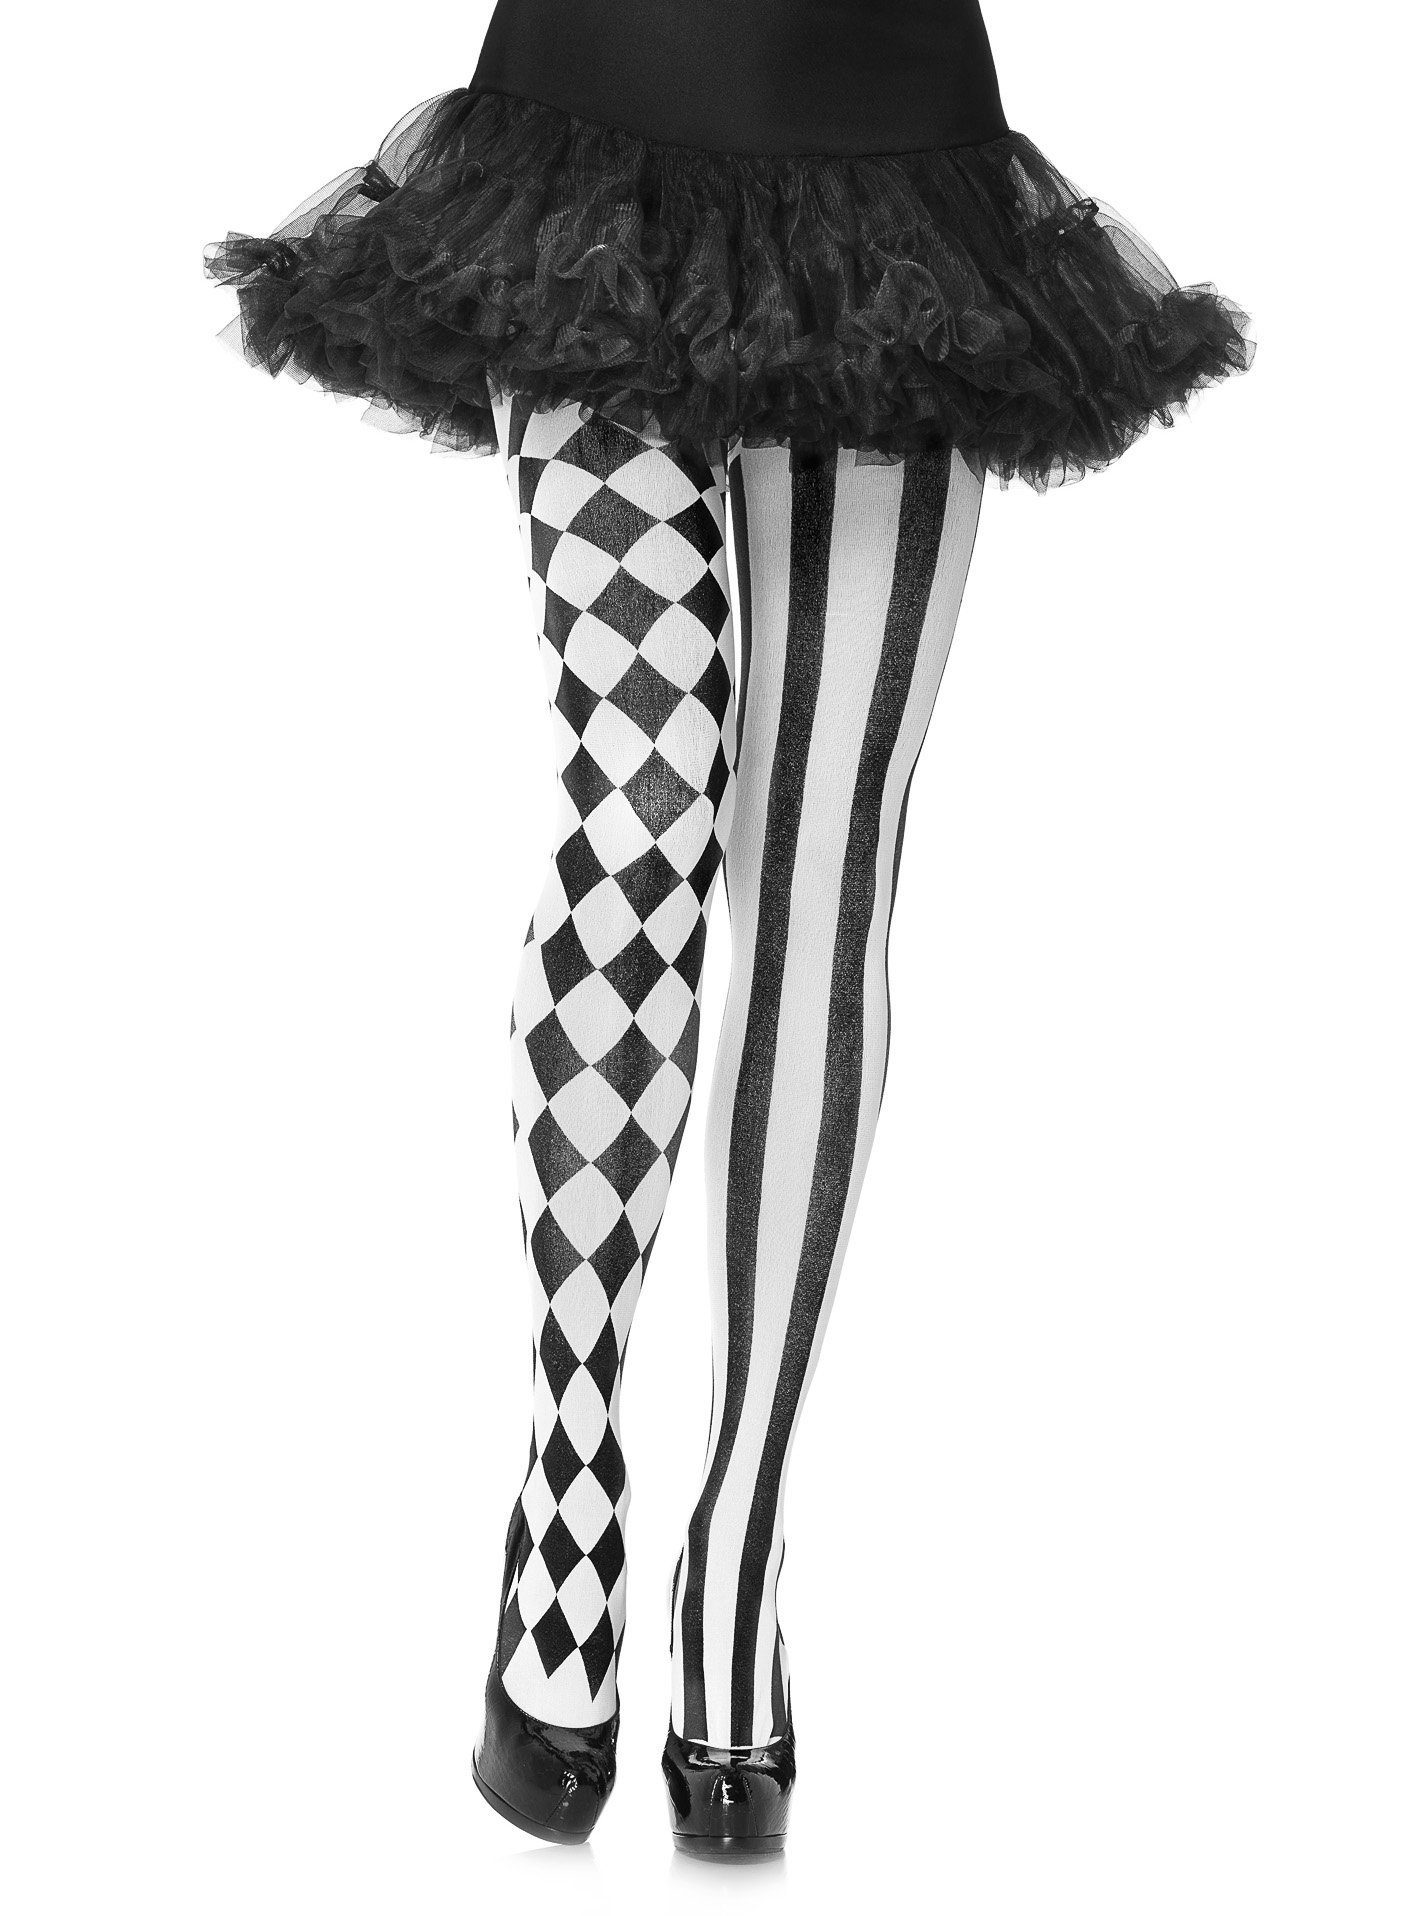 Strumpfhose Stylishes Harlekinmuster, das Kostüm mit Stil und Avenue Accessoire, Leg vereint Eleganz